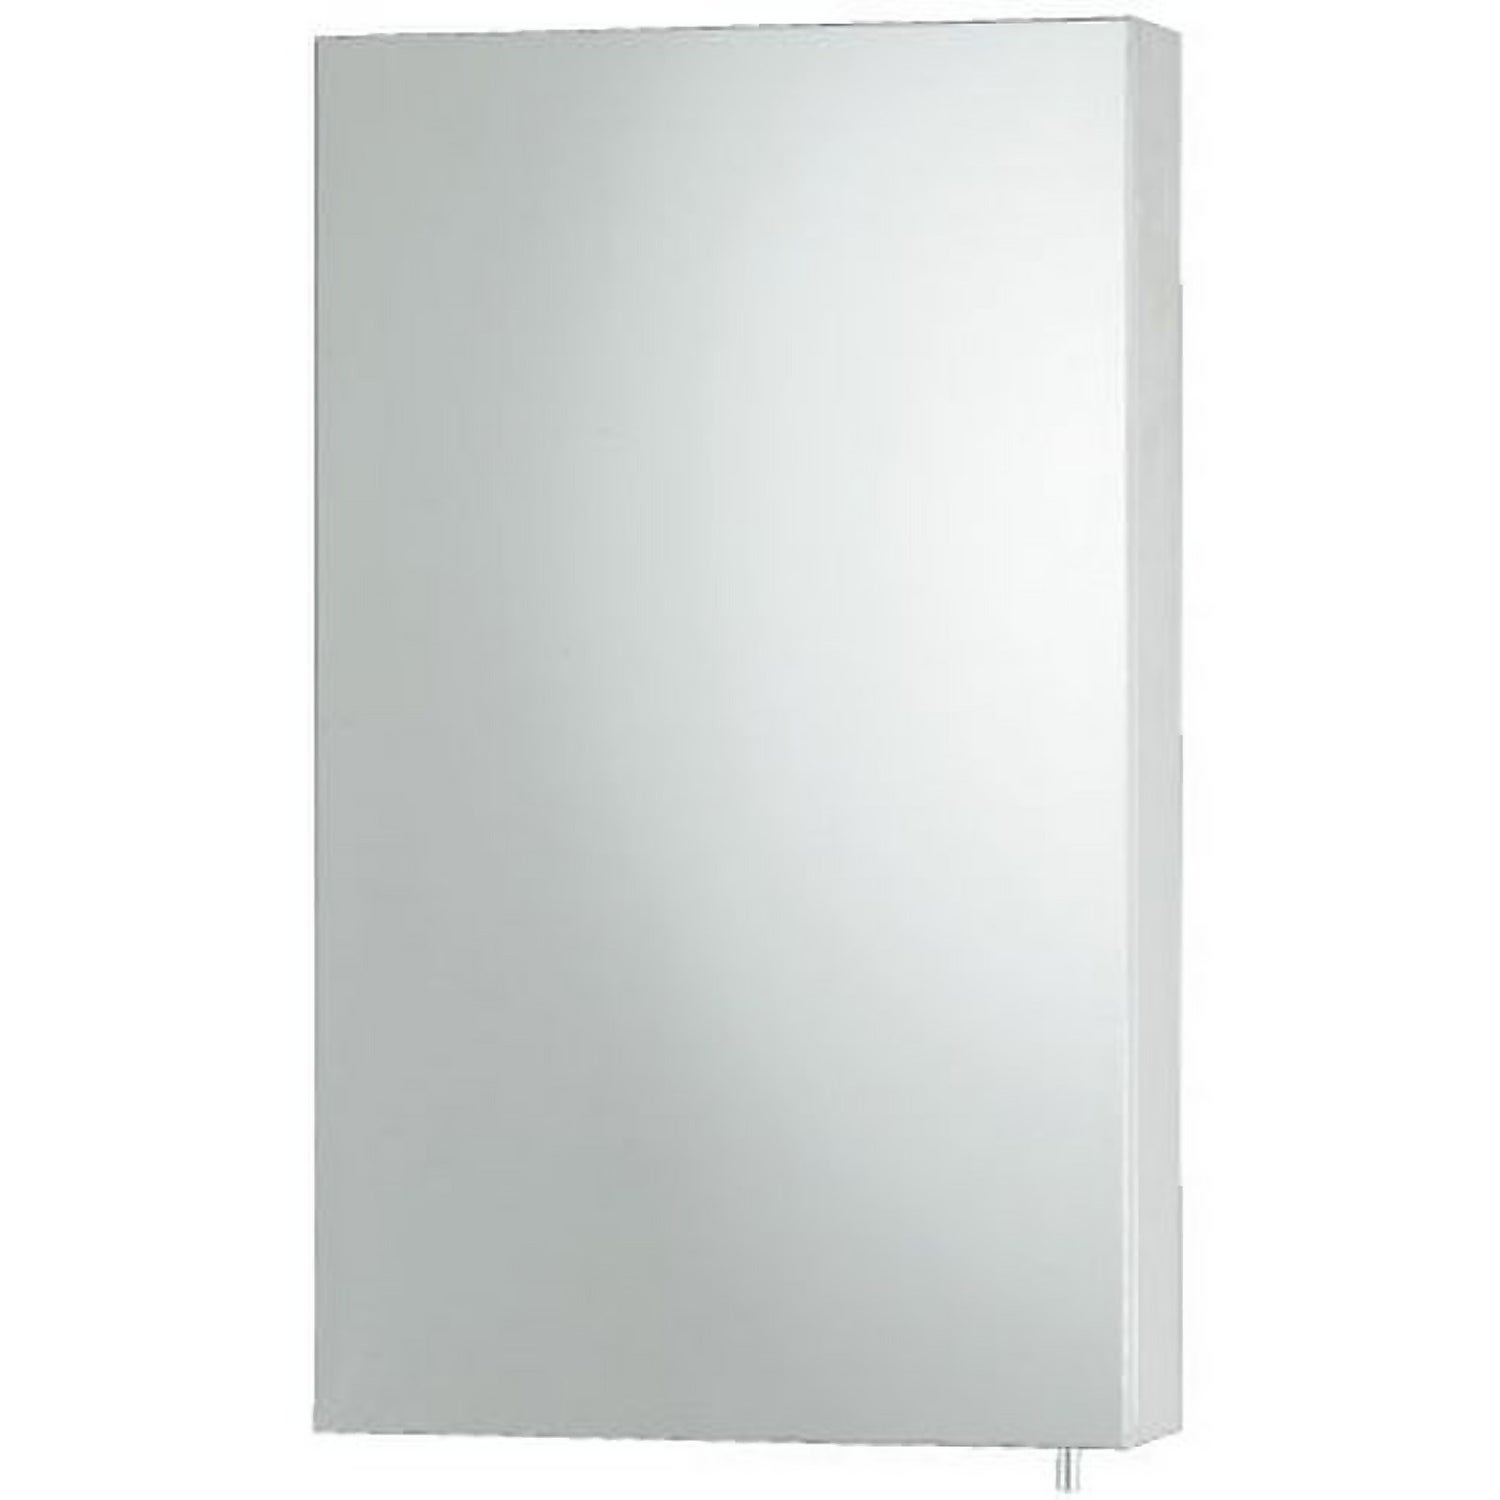 Stainless Steel Single Door Bathroom Mirror Cabinet